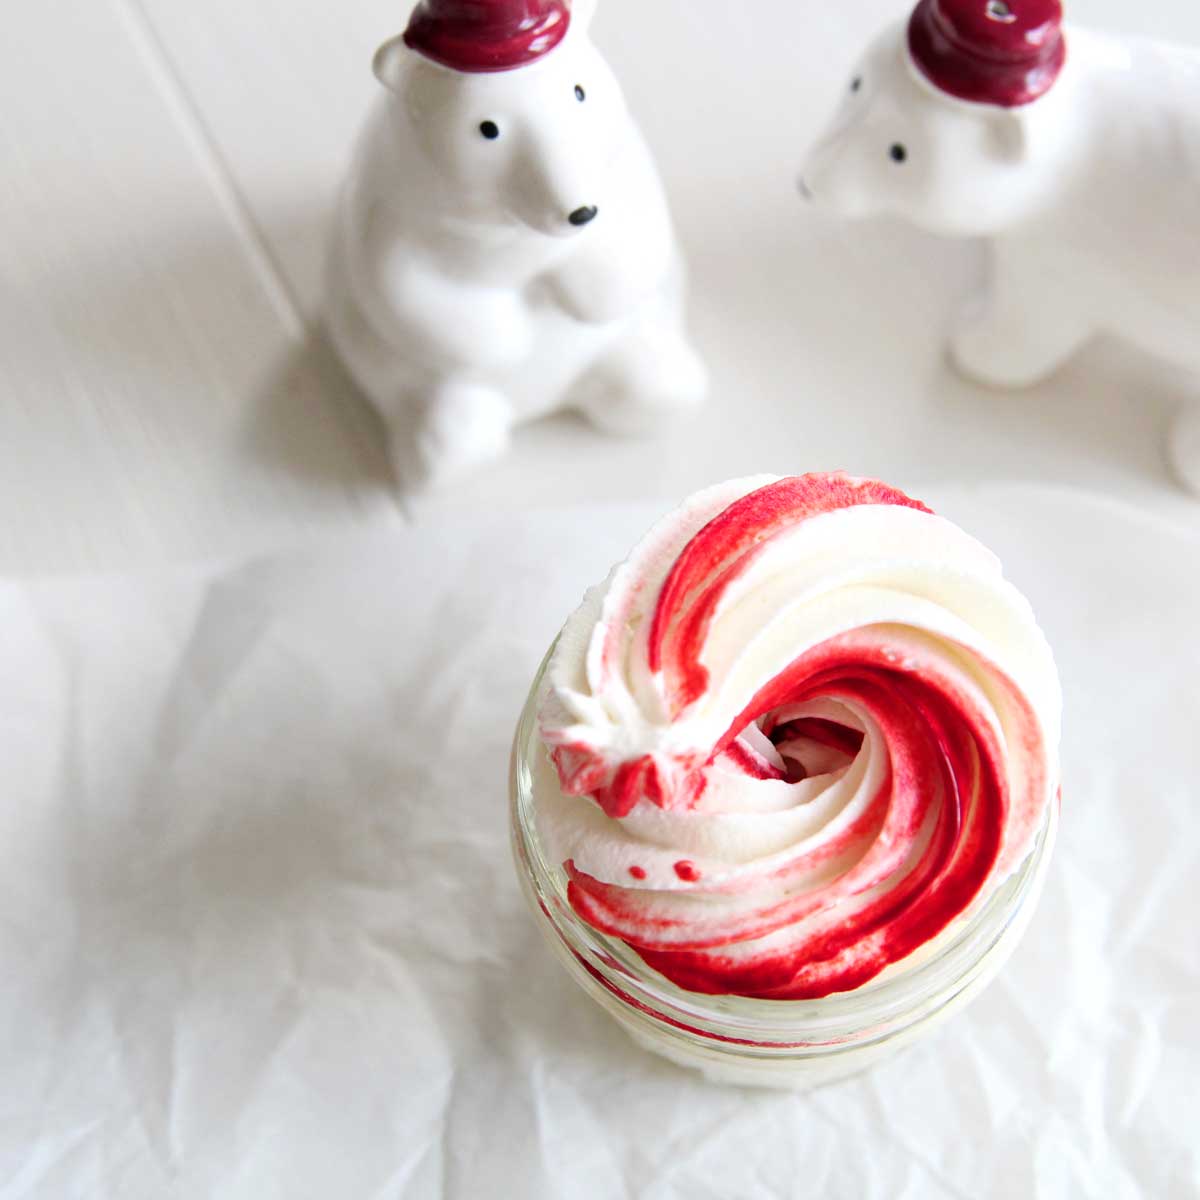 Easy Swirled Peppermint Whipped Cream (Chantilly Cream) Recipe - Red Velvet Cake Protein Bars